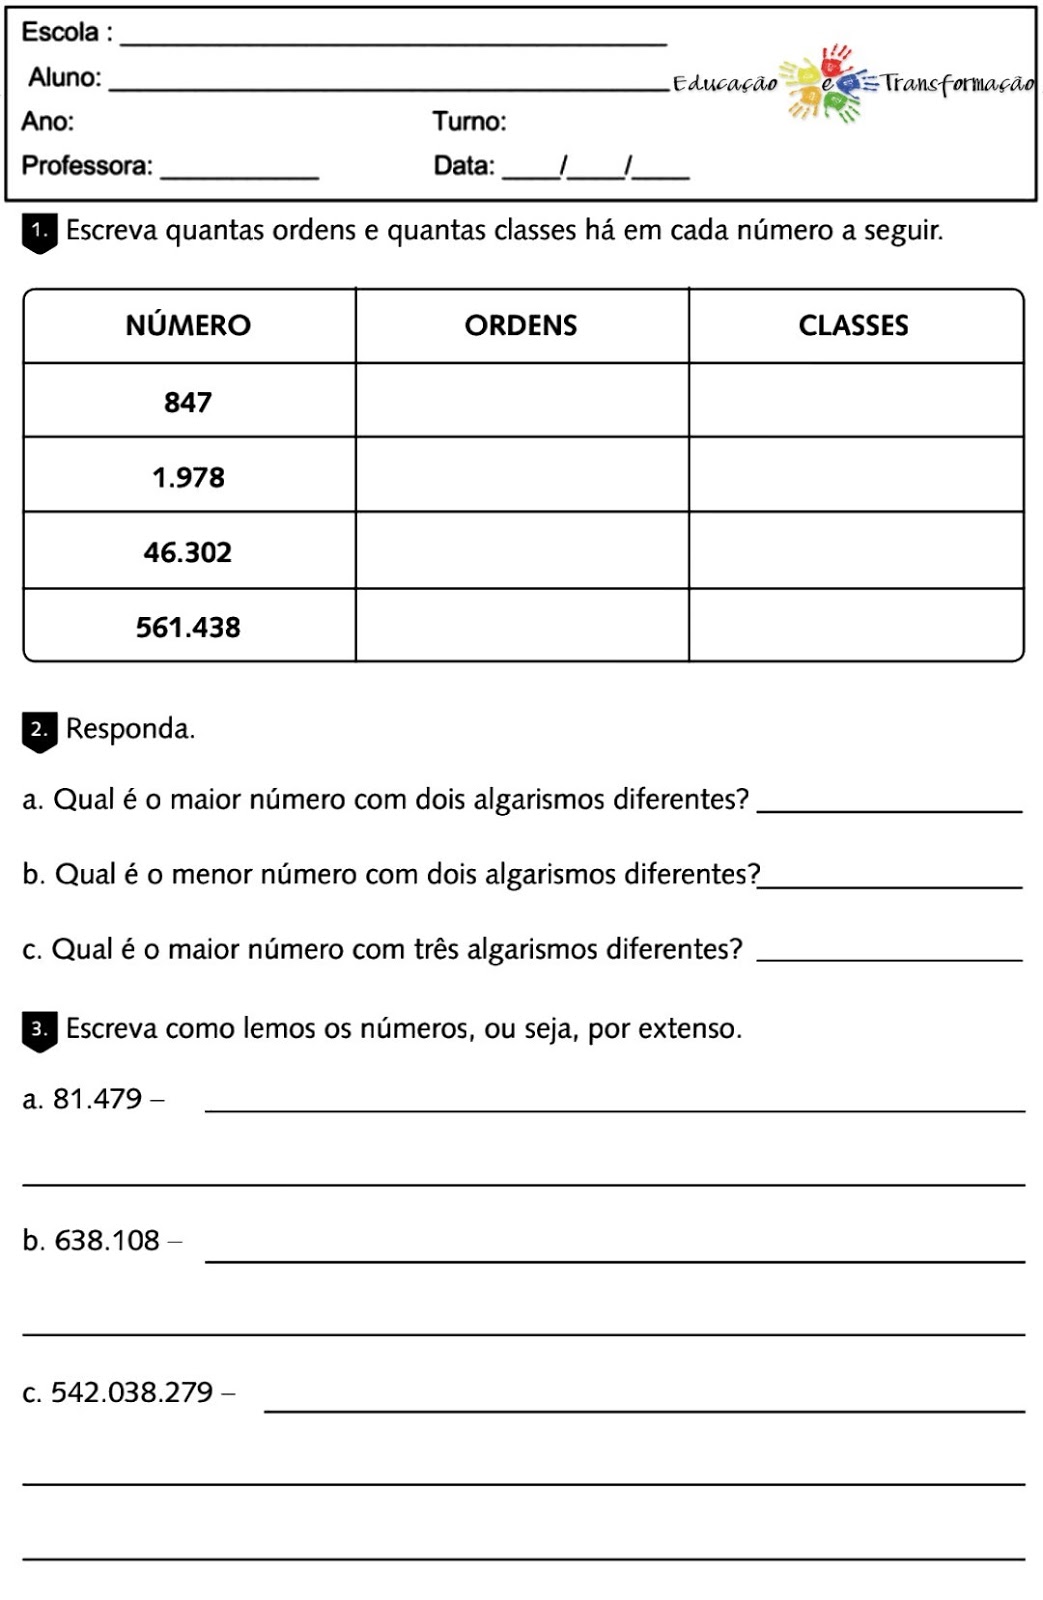 Como trabalhar o sistema de numeração decimal #SND 